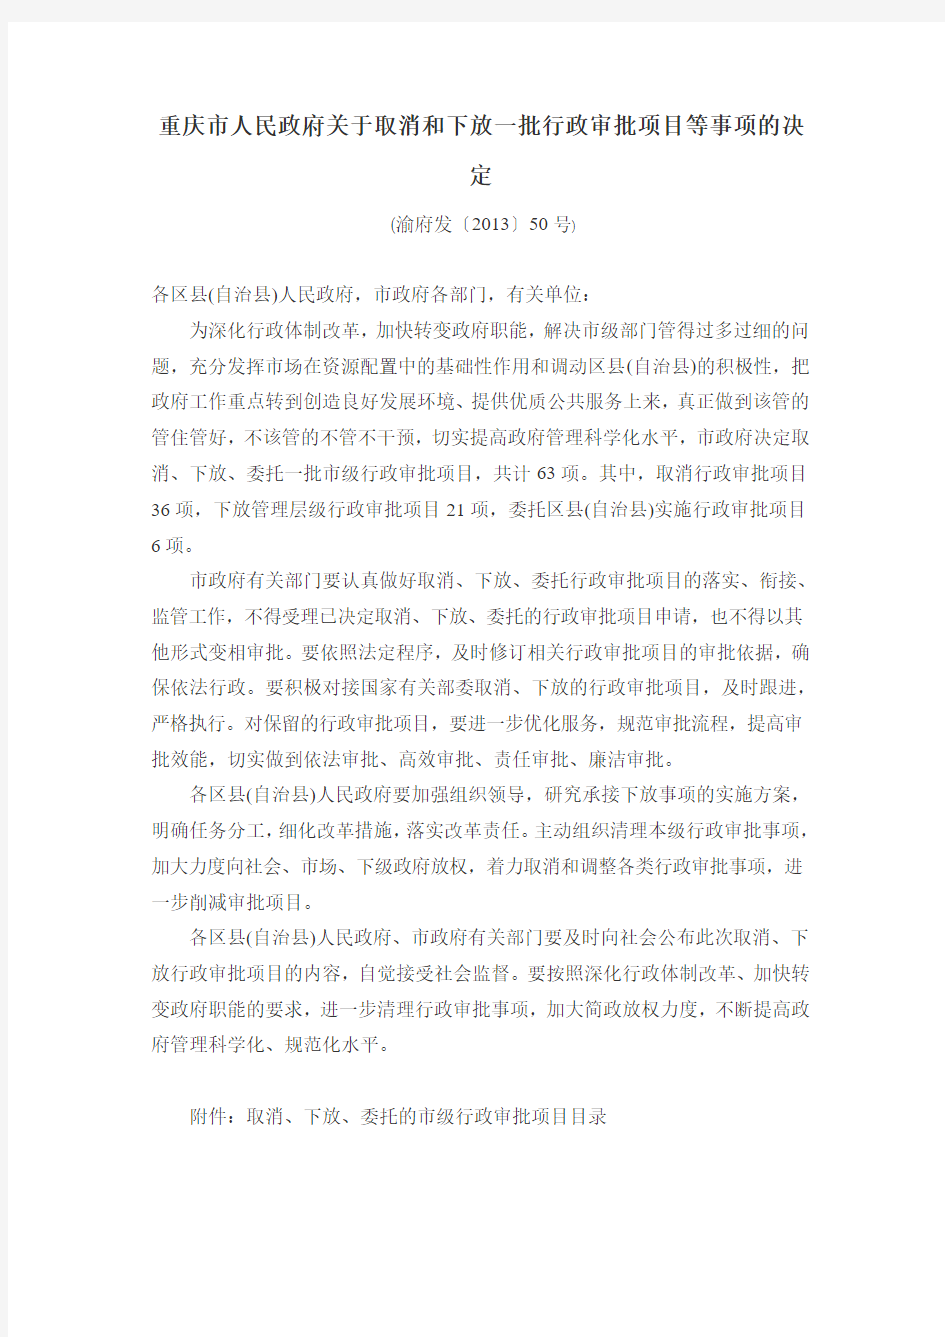 重庆市人民政府关于取消和下放一批行政审批项目等事项的决定 (渝府发〔2013〕50号)